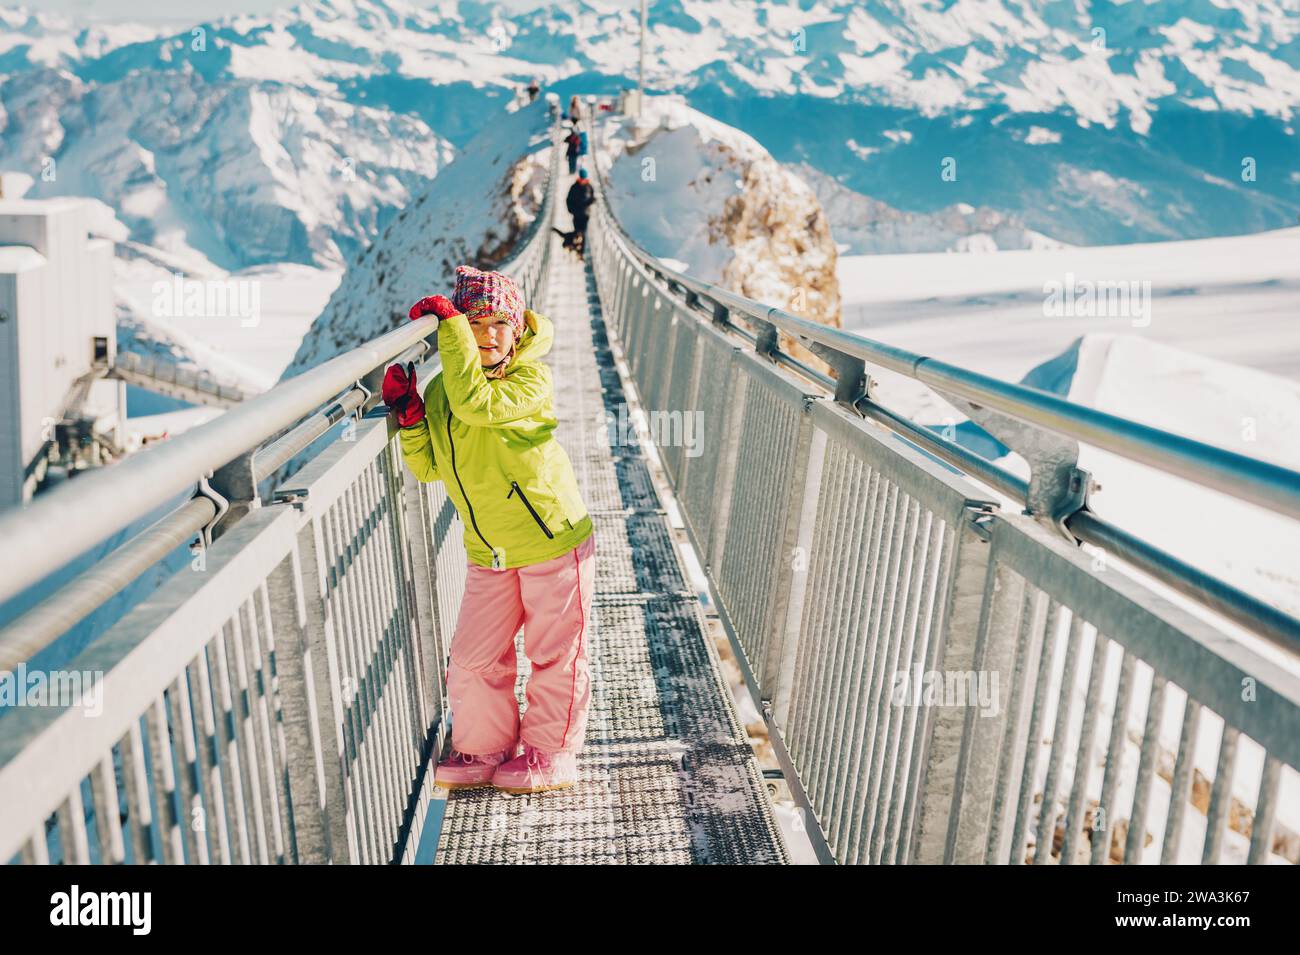 Bambina che gioca con la neve sulla cima della montagna, vacanze invernali con bambini, attività per famiglie sulle Alpi. Immagine scattata nel ghiacciaio 3000, cantone Foto Stock